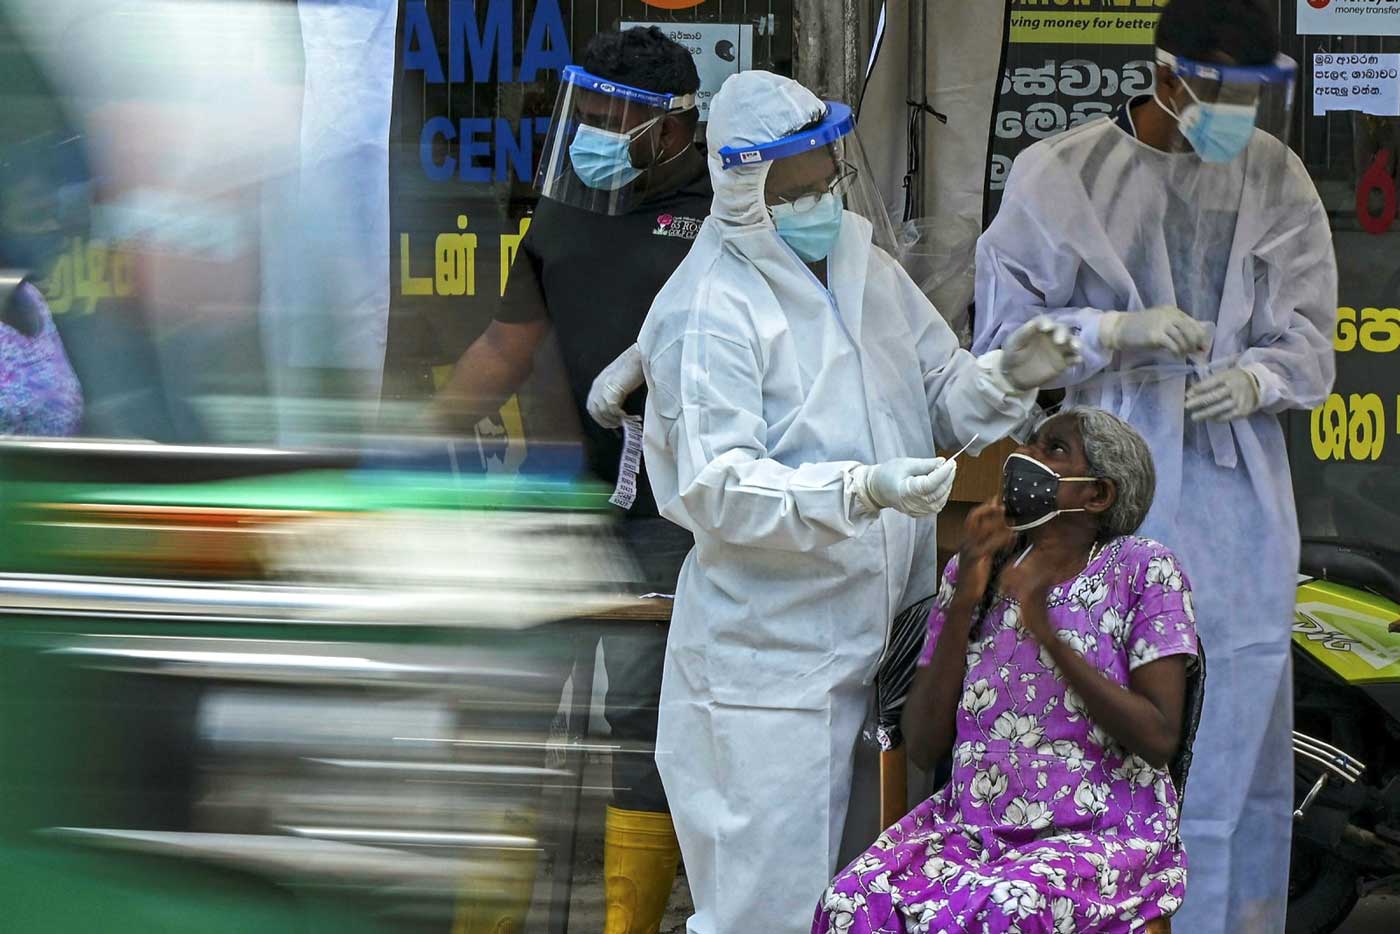 Медицинские работники в Коломбо, Шри-Ланка, тестируют местную жительницу на Covid. Существует риск, что попытки организовать глобальную цепочку поставок могут дополнительно усилить неравенство в поставке вакцин, из-за концентрации производства в самых богатых странах.